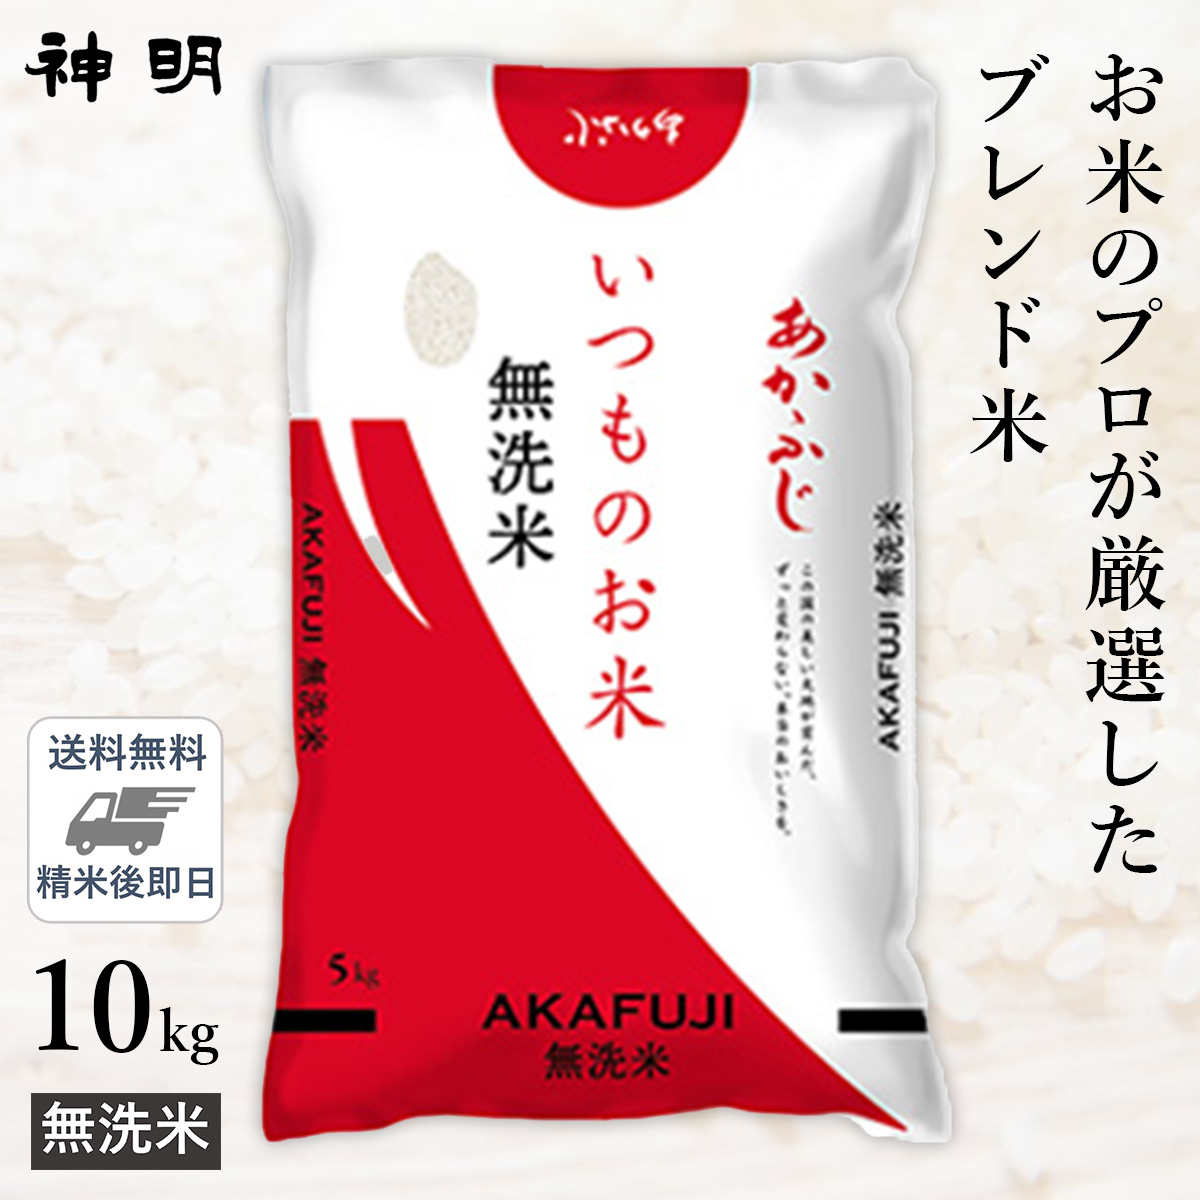 ○【送料無料】無洗米 いつものお米あかふじ 10kg(5kg×2袋) 精米仕立て